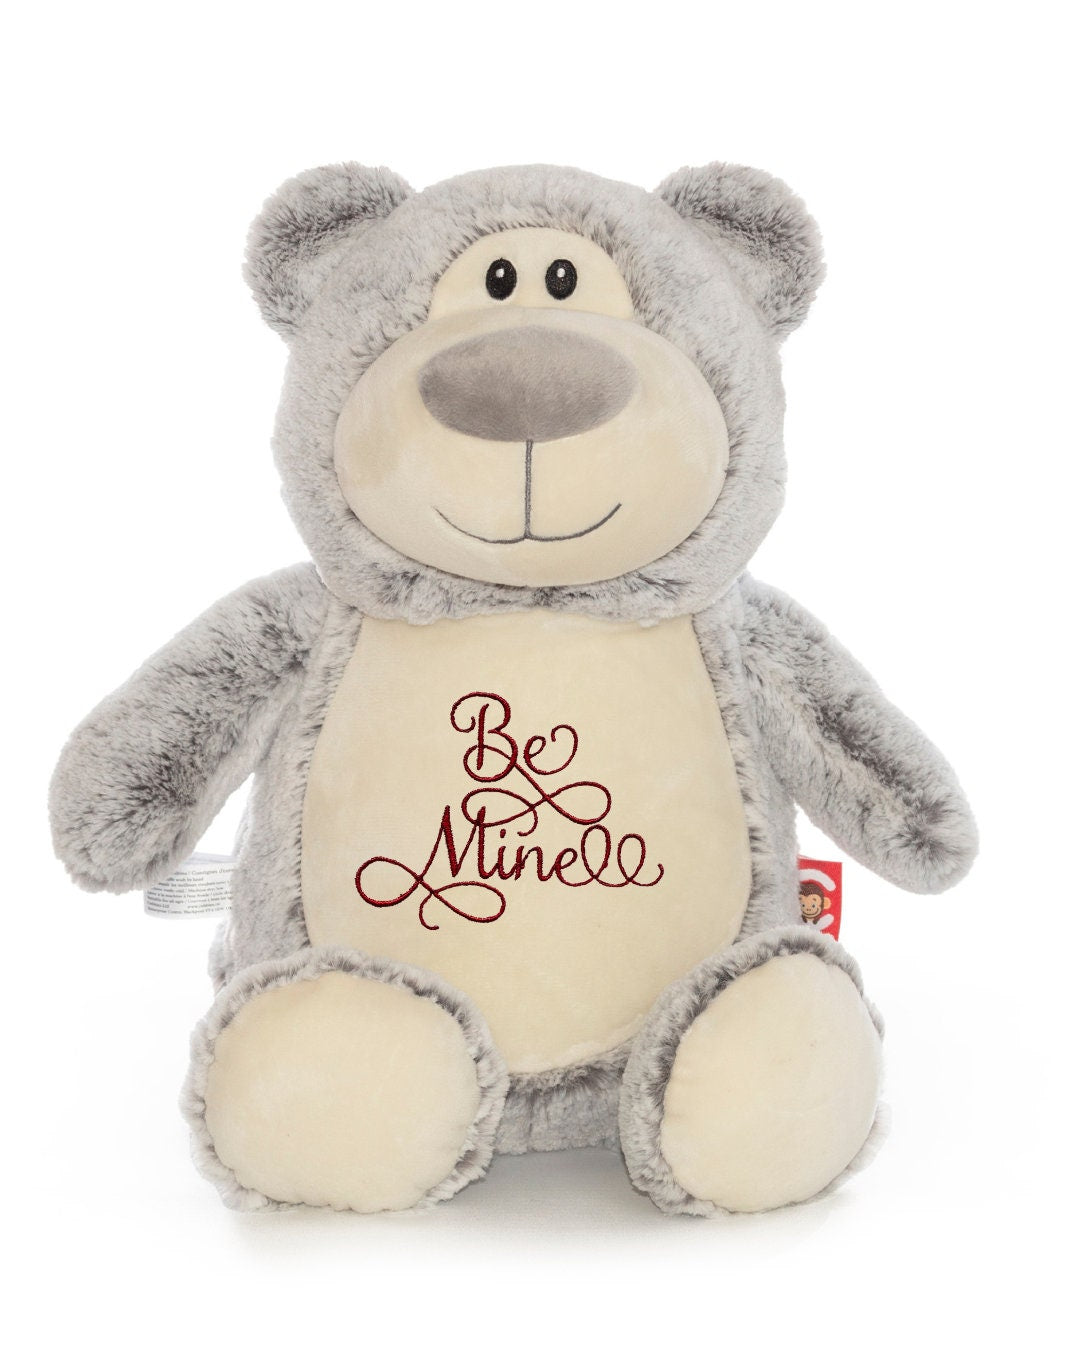 Valentine Teddy Bear, Valentine Gift, Valentines Day Gift, Gift For Girlfriend, Gift For Boyfriend